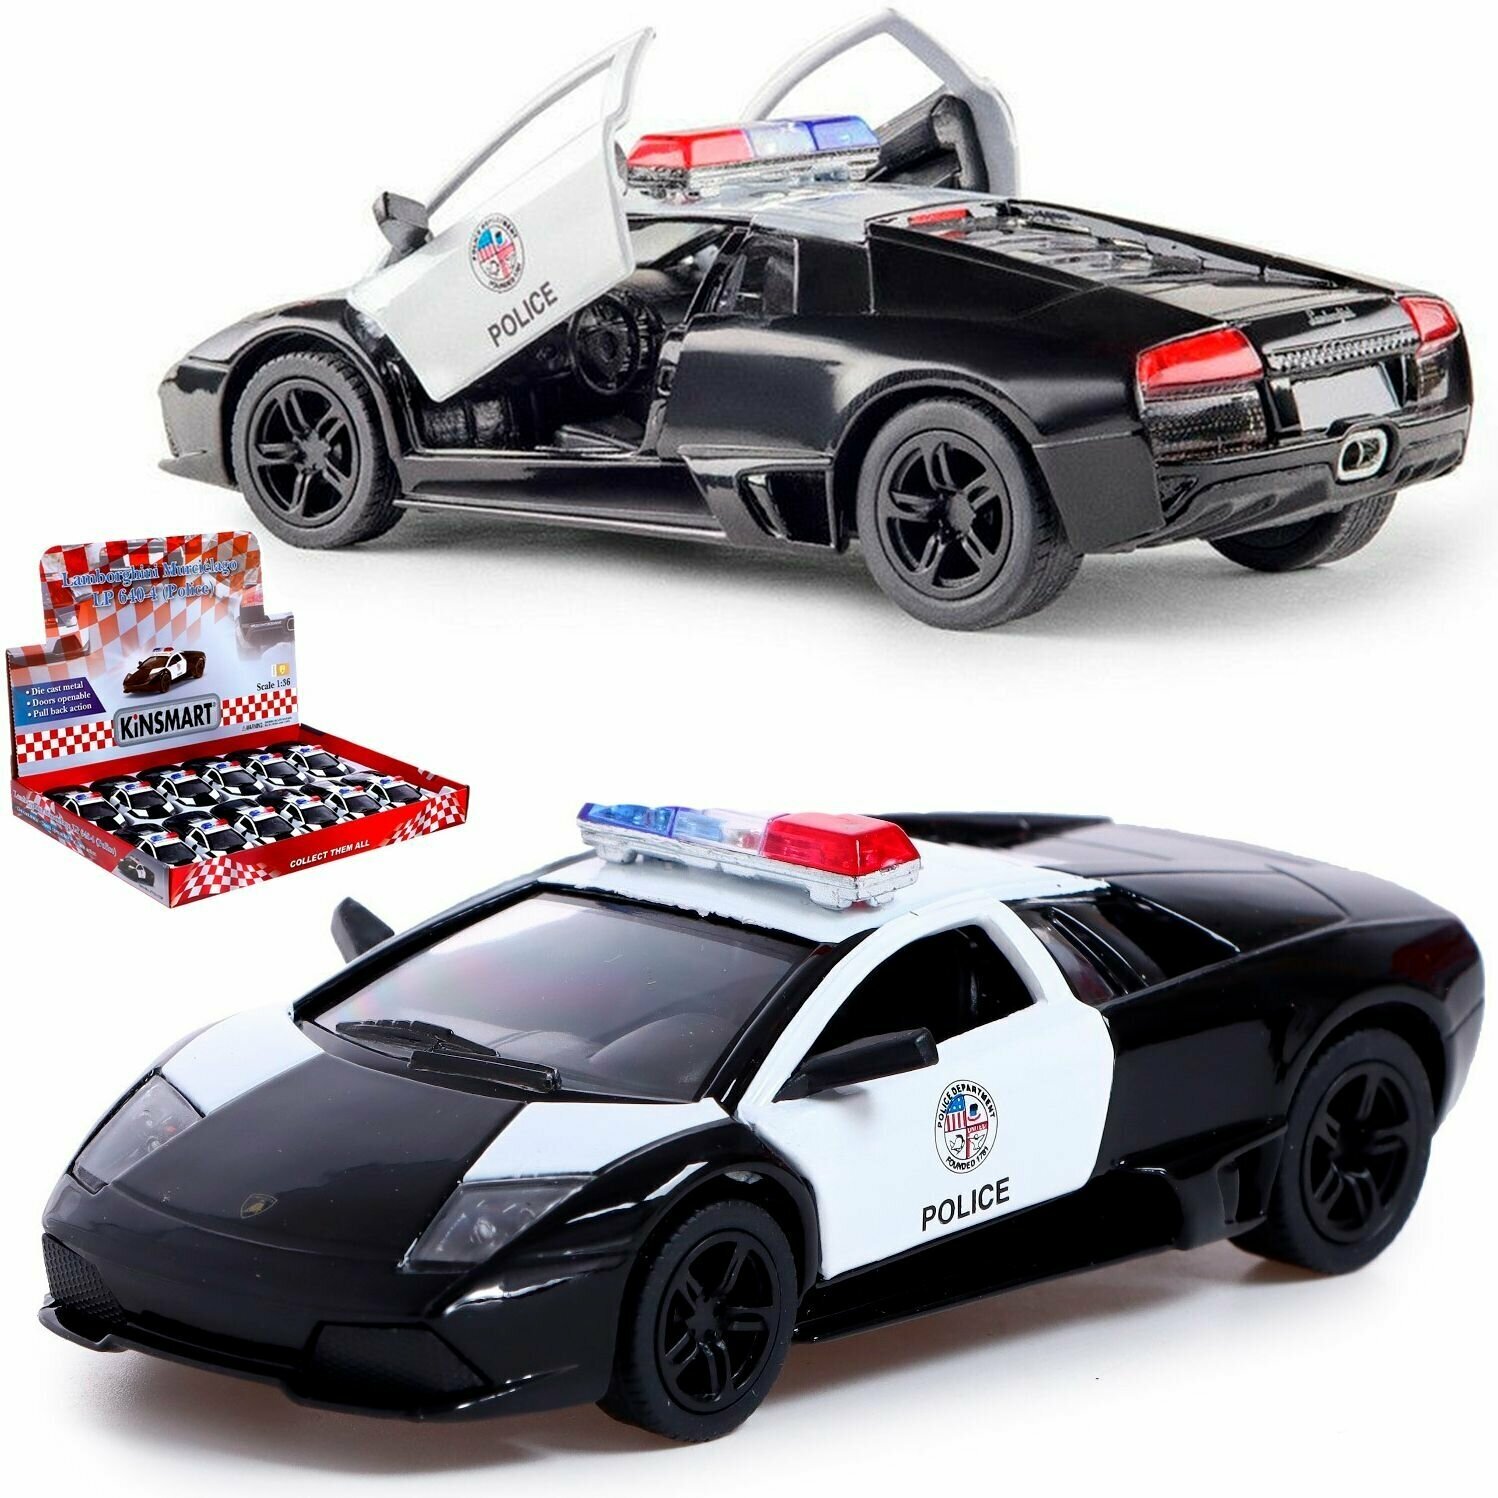 Машинка металлическая игрушка 1:36 Lamborghini Murcielago LP640 Police (Ламборгини Мурселаго Полицейская) инерционная, 12,5 см.